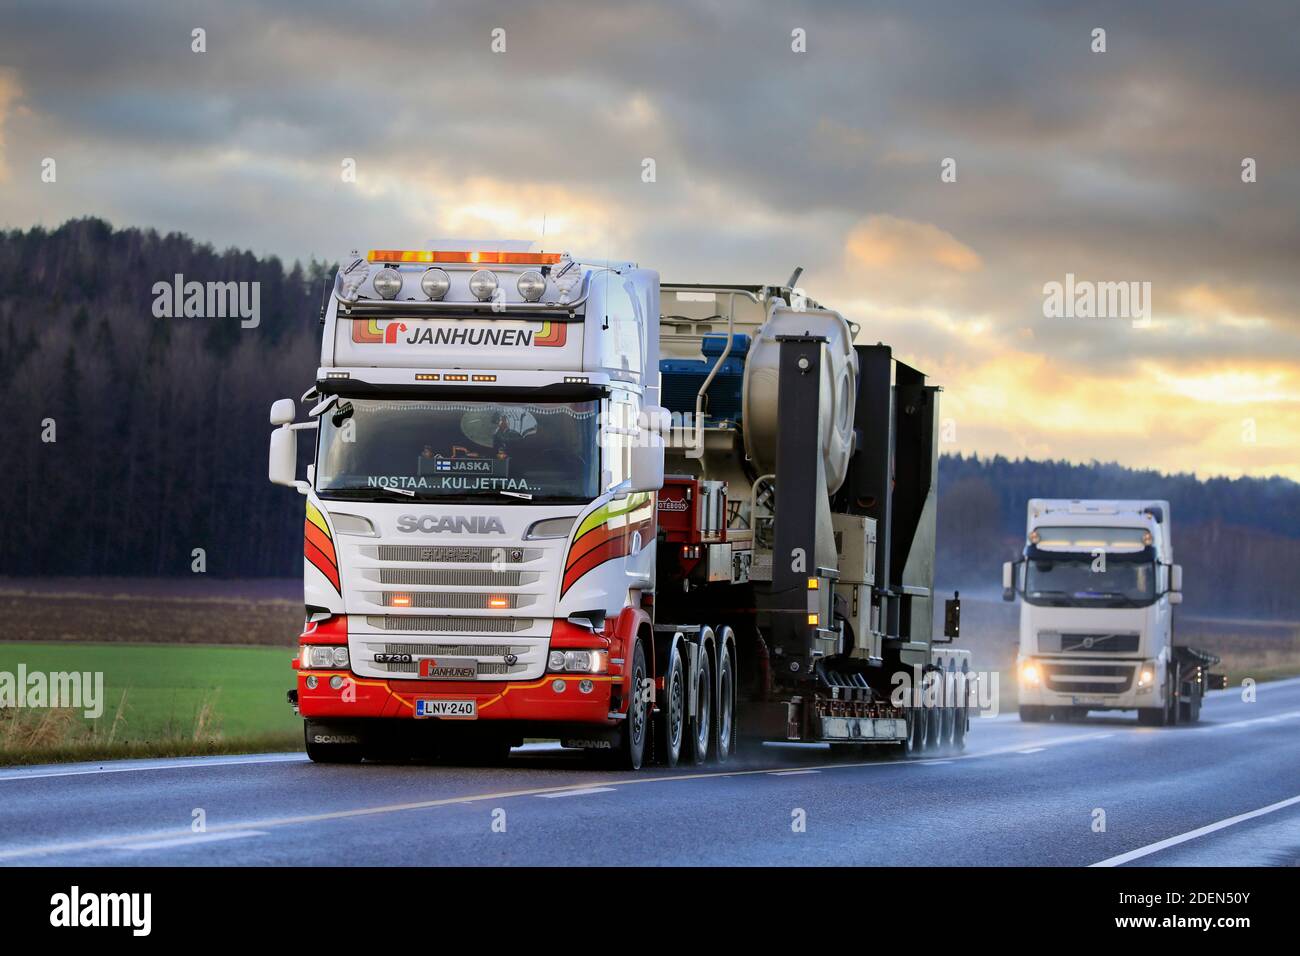 Scania R730 camion de Janhunen transporte le concasseur à mâchoires Metso Nordberg comme charge exceptionnelle dans la circulation sur l'autoroute 52. Salo, Finlande. 26 novembre 2020. Banque D'Images